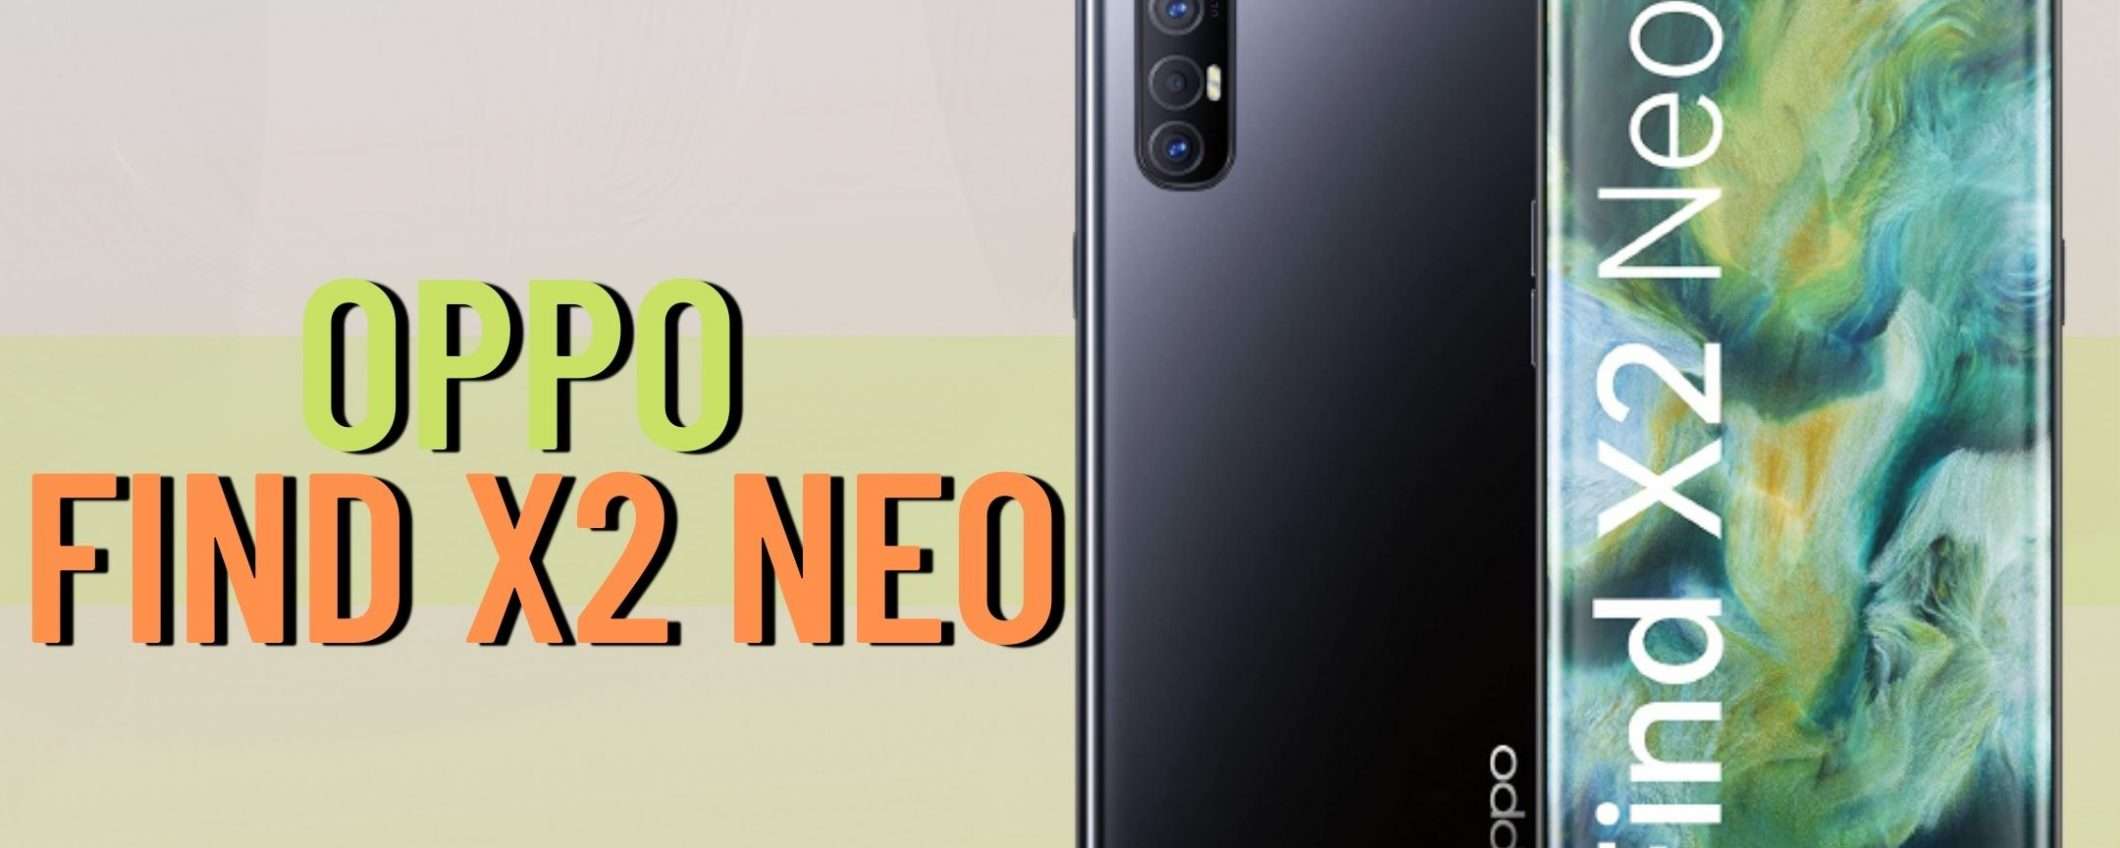 Oppo Find X2 NEO: in offerta con 100€ di sconto istantanei